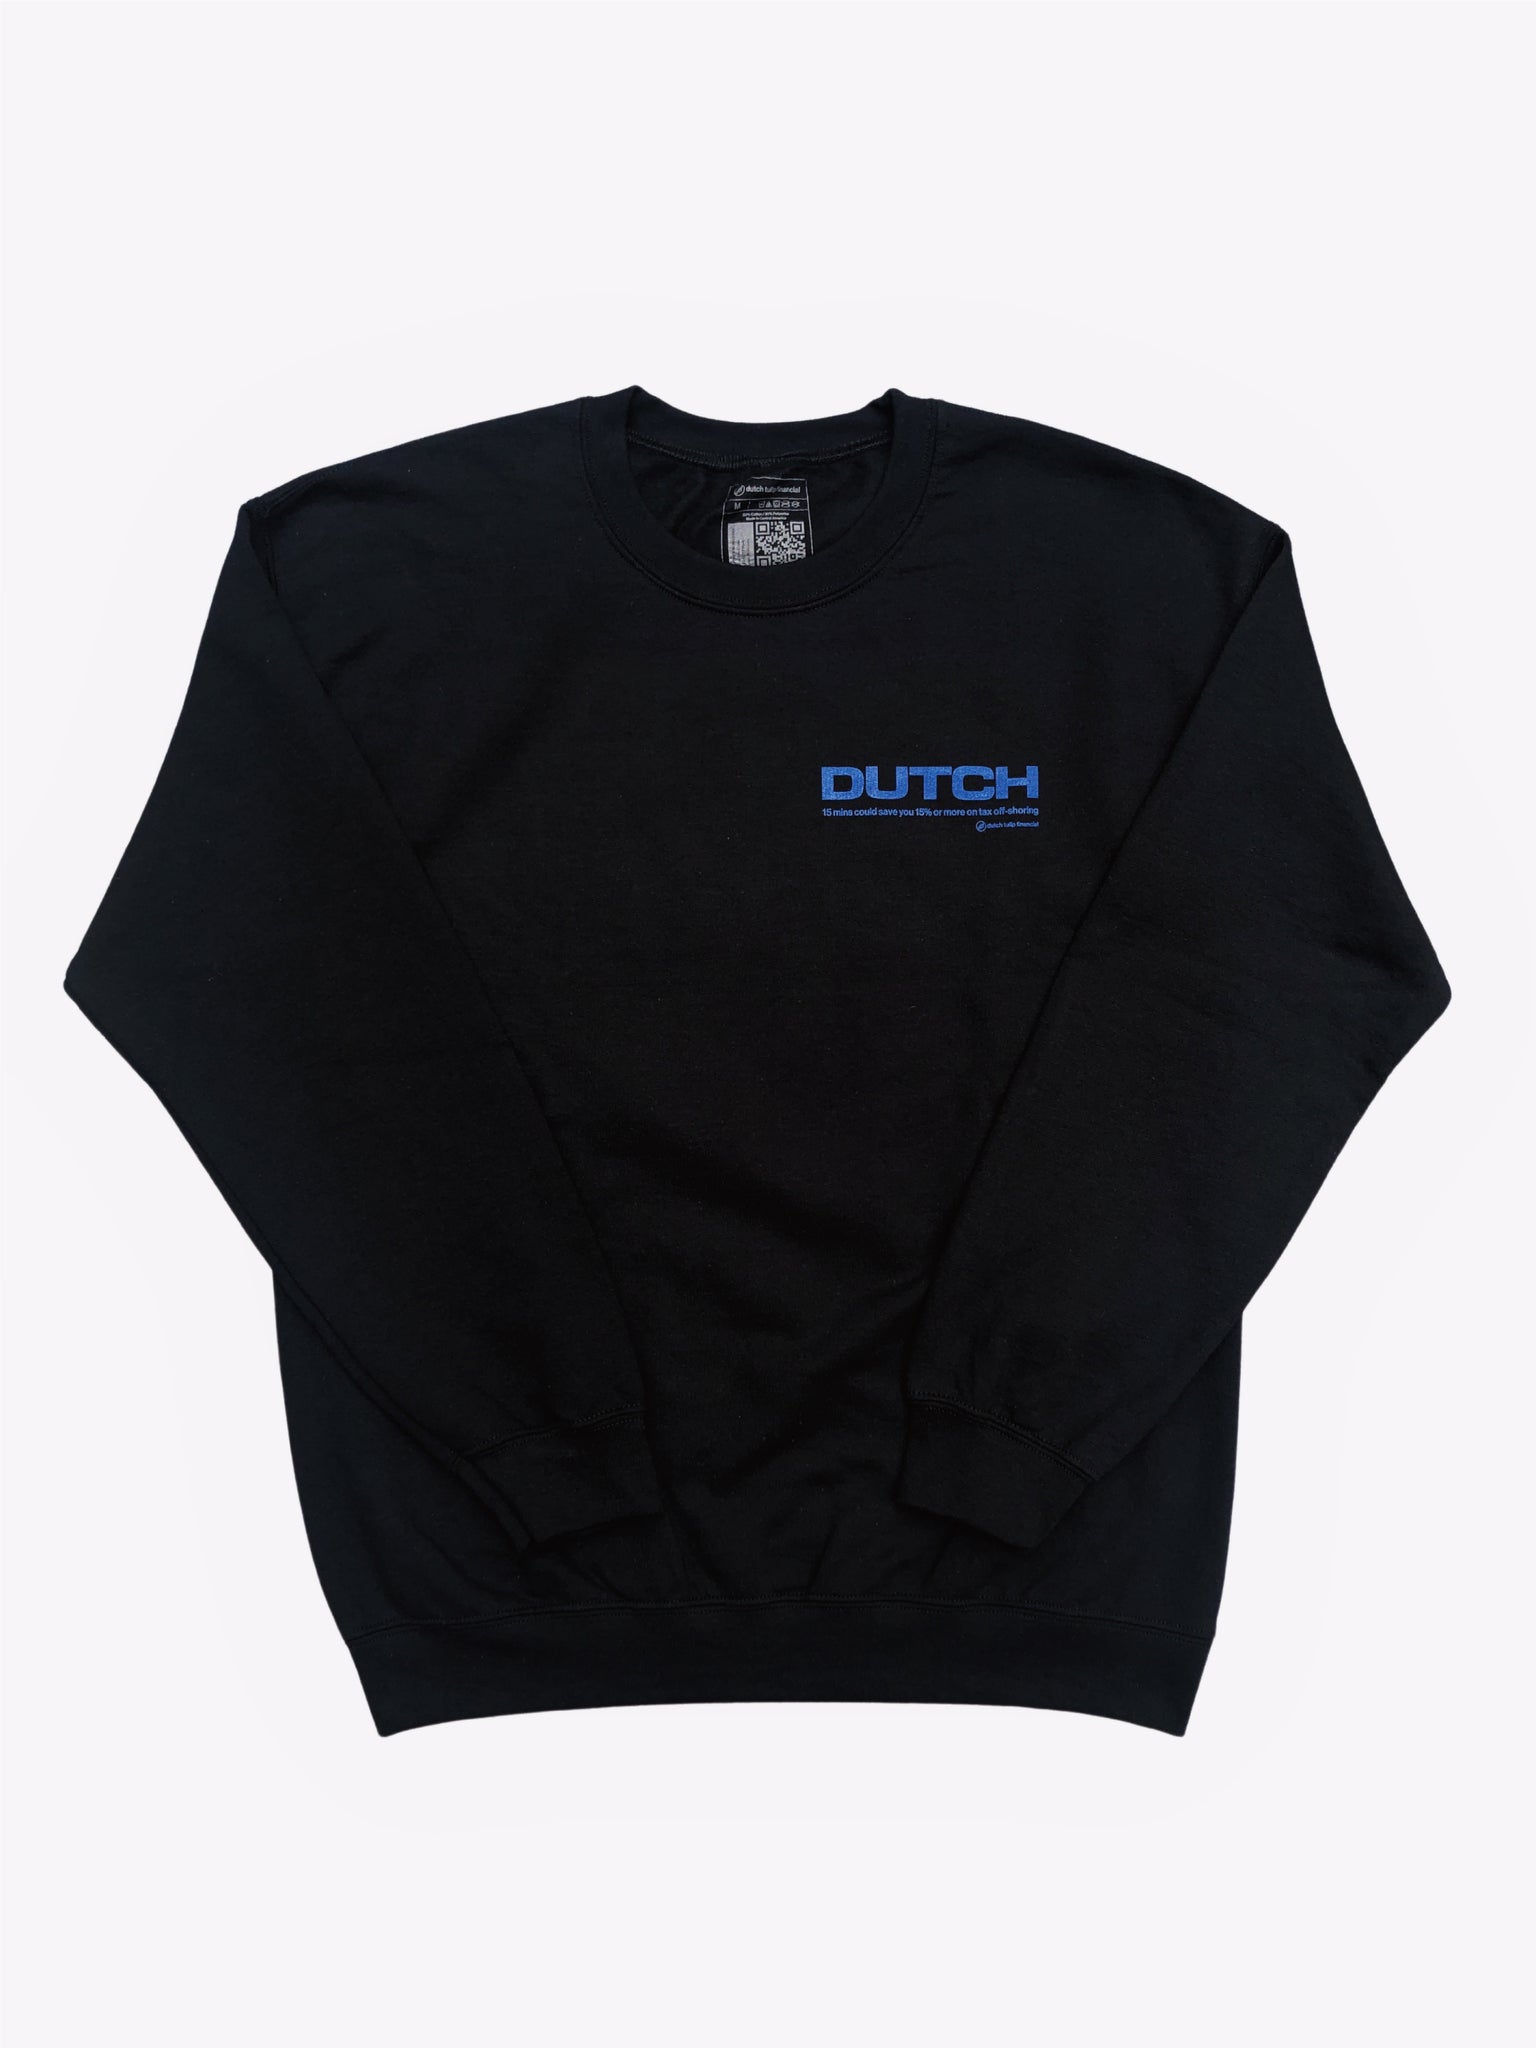 Geico Dutch Sweatshirt - Black